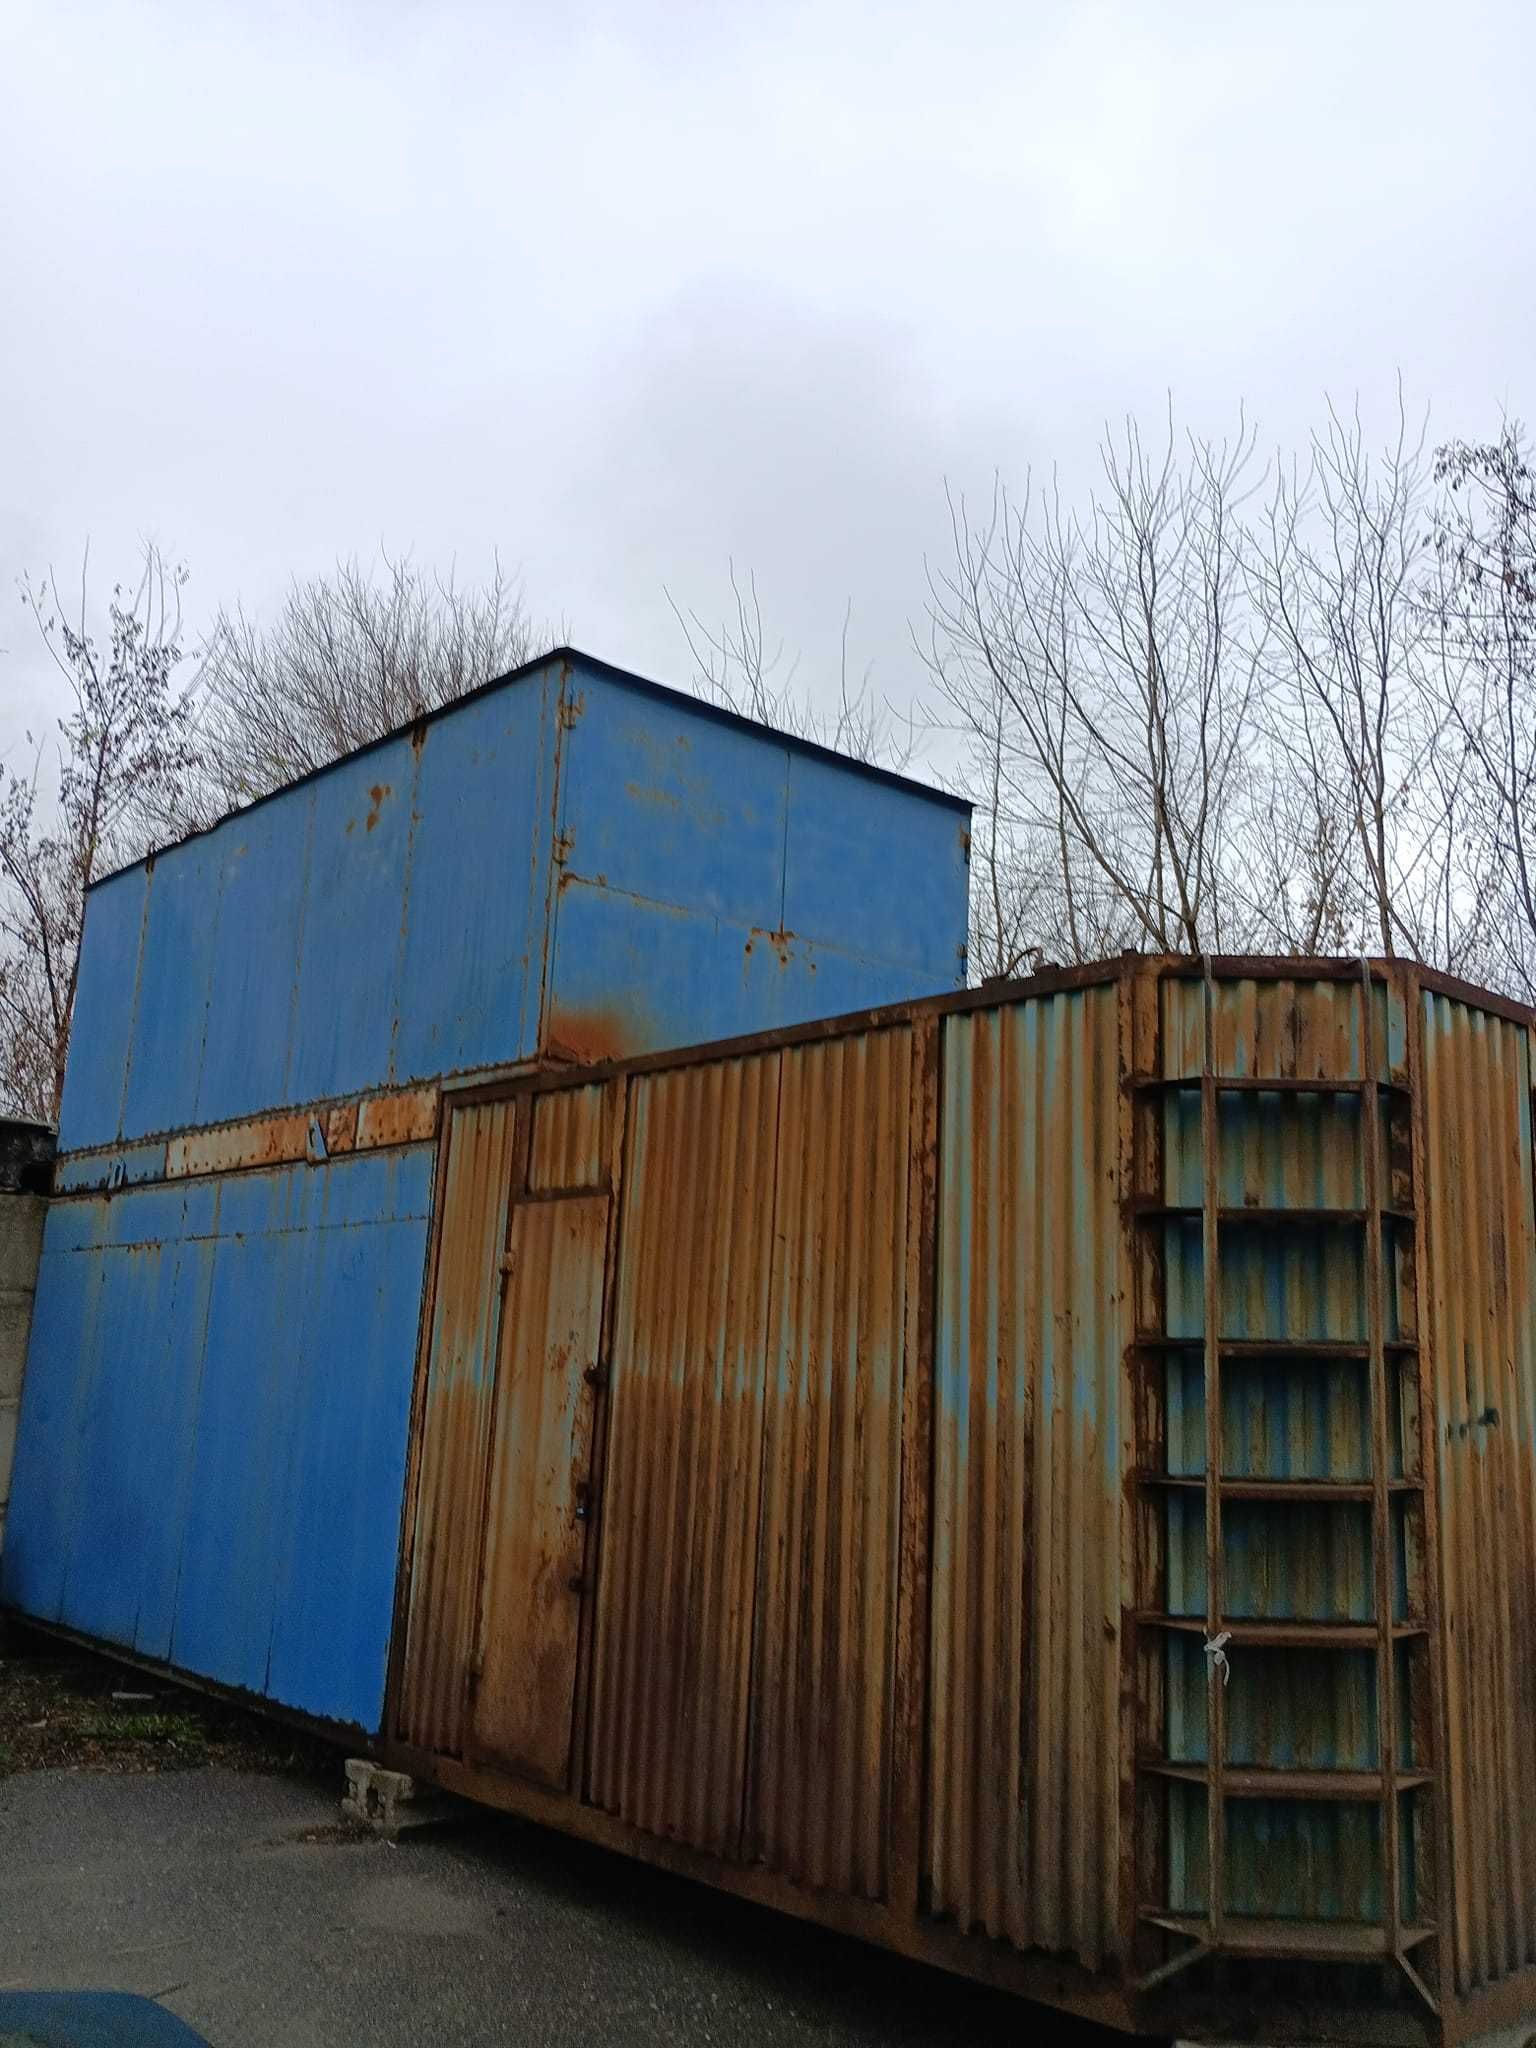 Продам СТО в Ново Баварском районе,4 поста,270 м2,закрытая територия